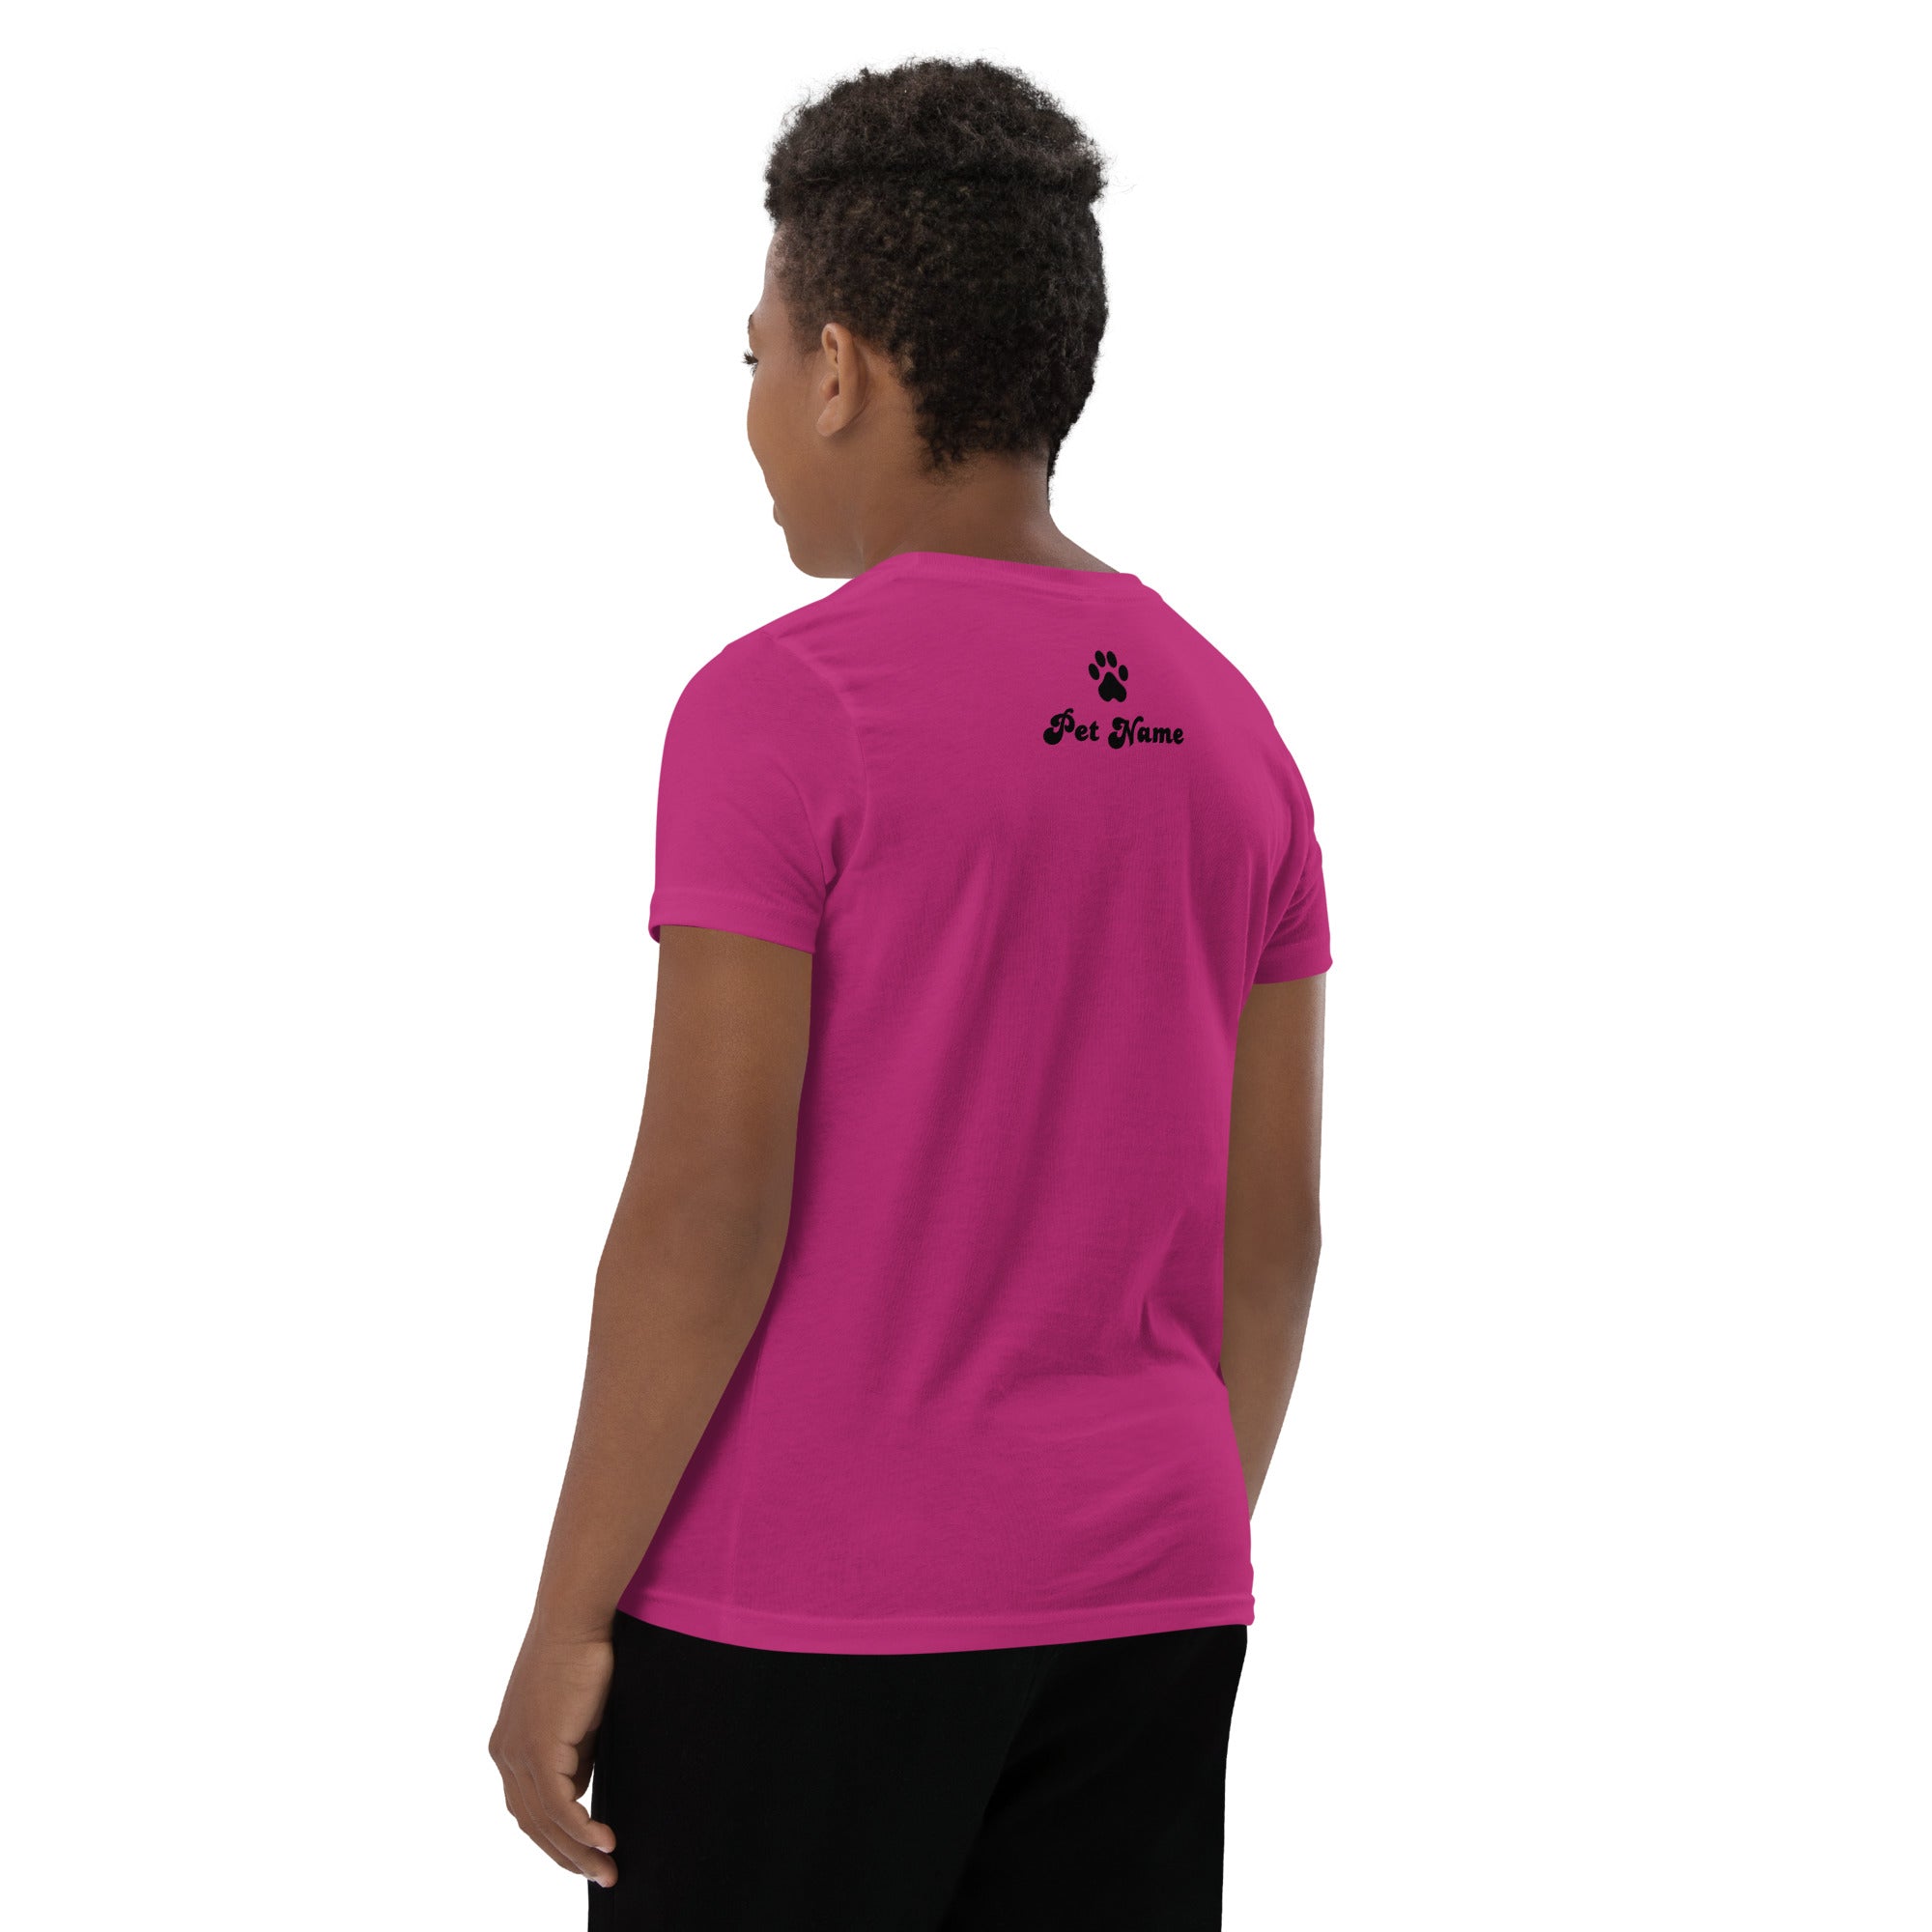 Maltese Youth Short Sleeve T-Shirt